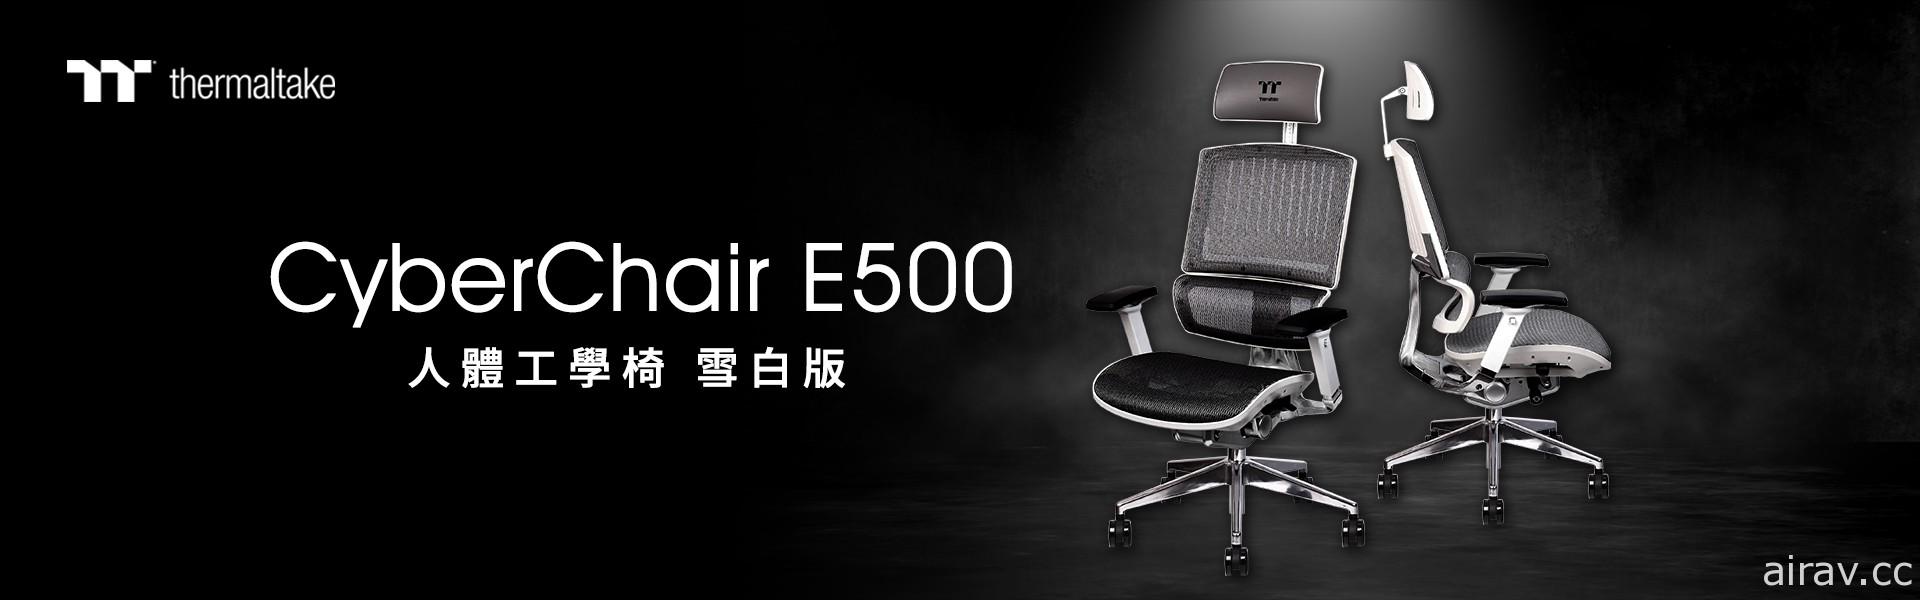 曜越 CyberChair E500 人体工学椅推出雪白版